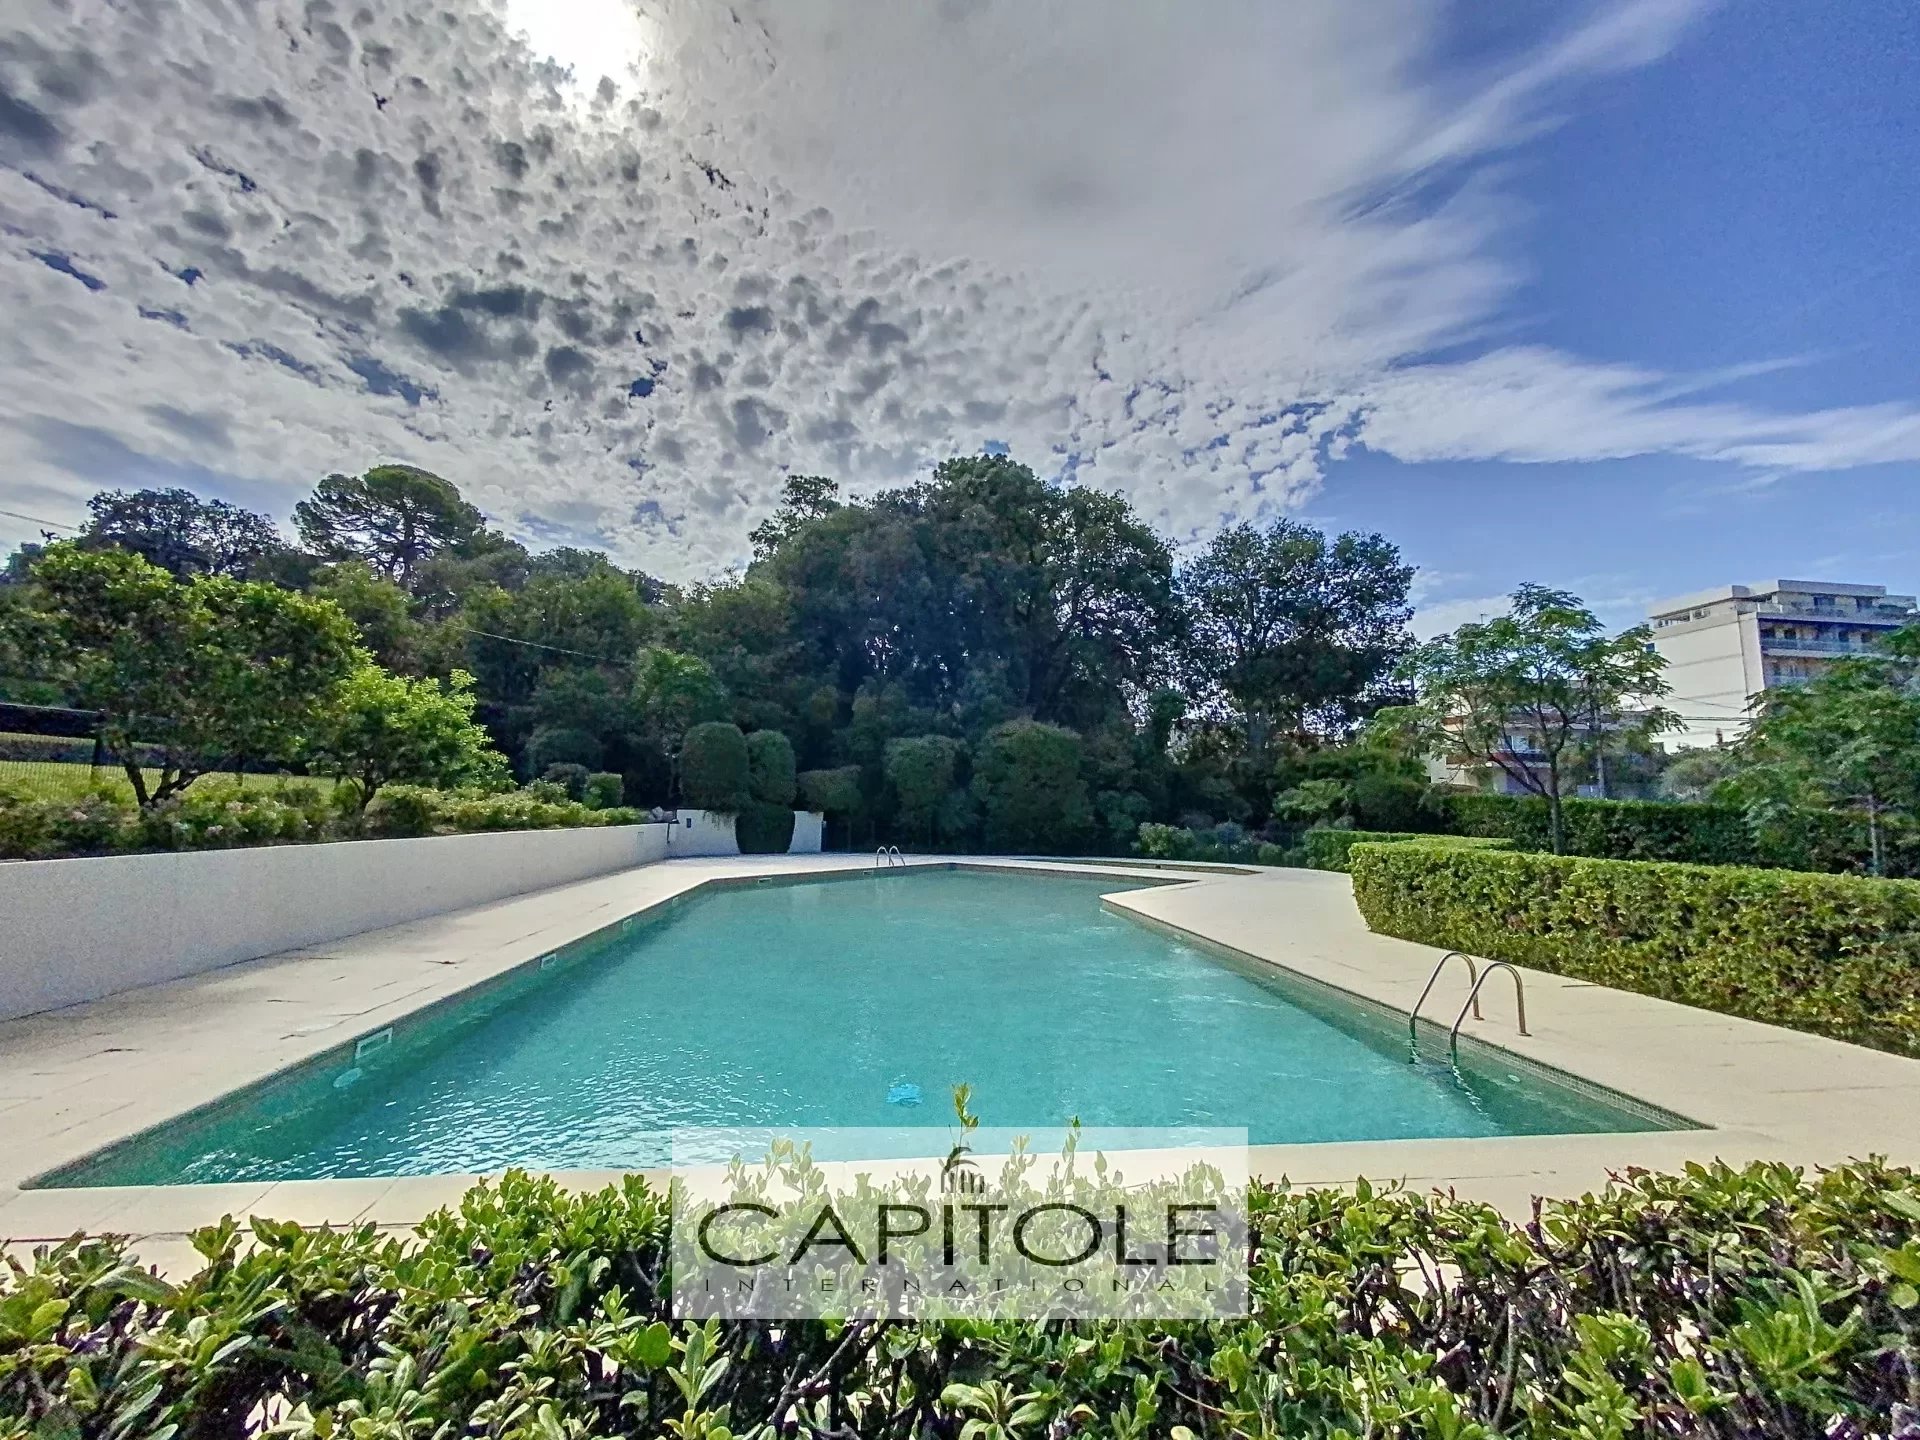 A VENDRE, proche Cap d'Antibes, 3 pièces, piscine, traversant, spacieuse terrasse, sans vis-à-vis, garage, cave